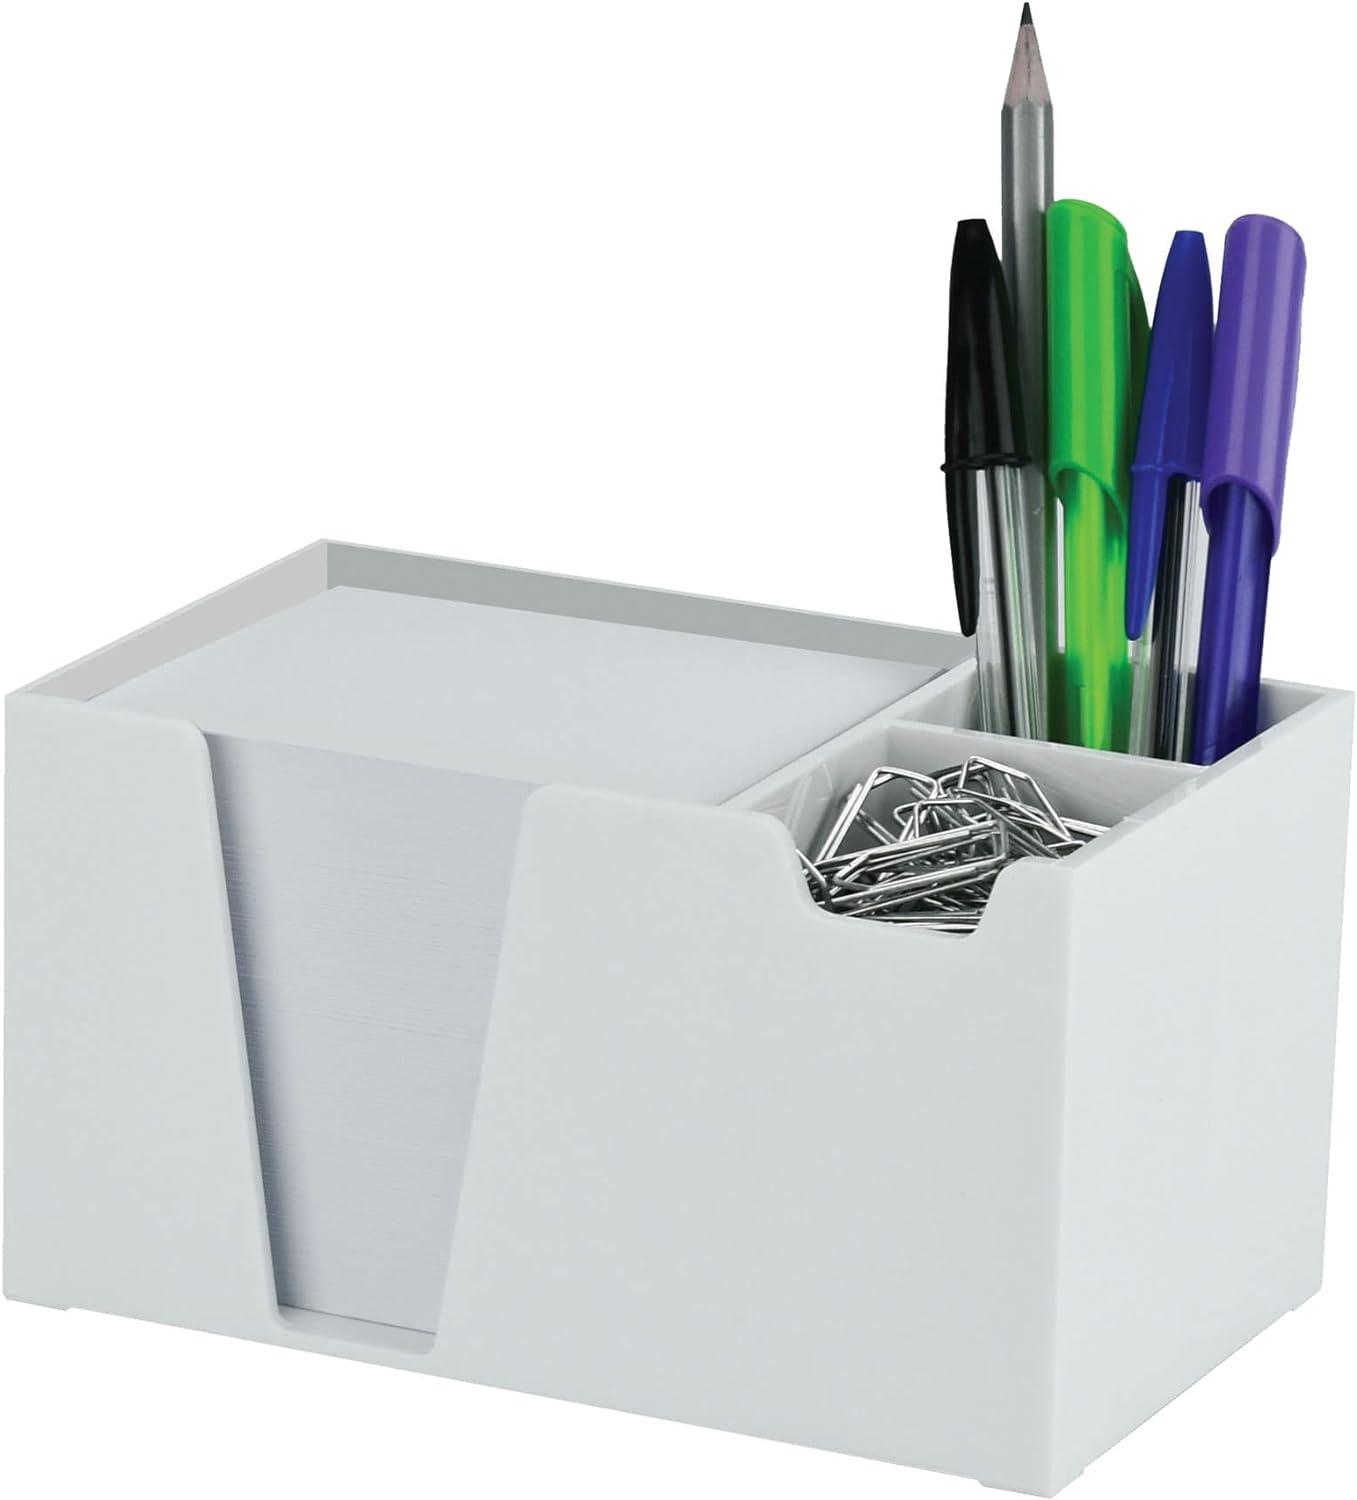 acrimet desktop organizer pencil paper clip caddy holder plastic with paper white color  acrimet b01bvq990s